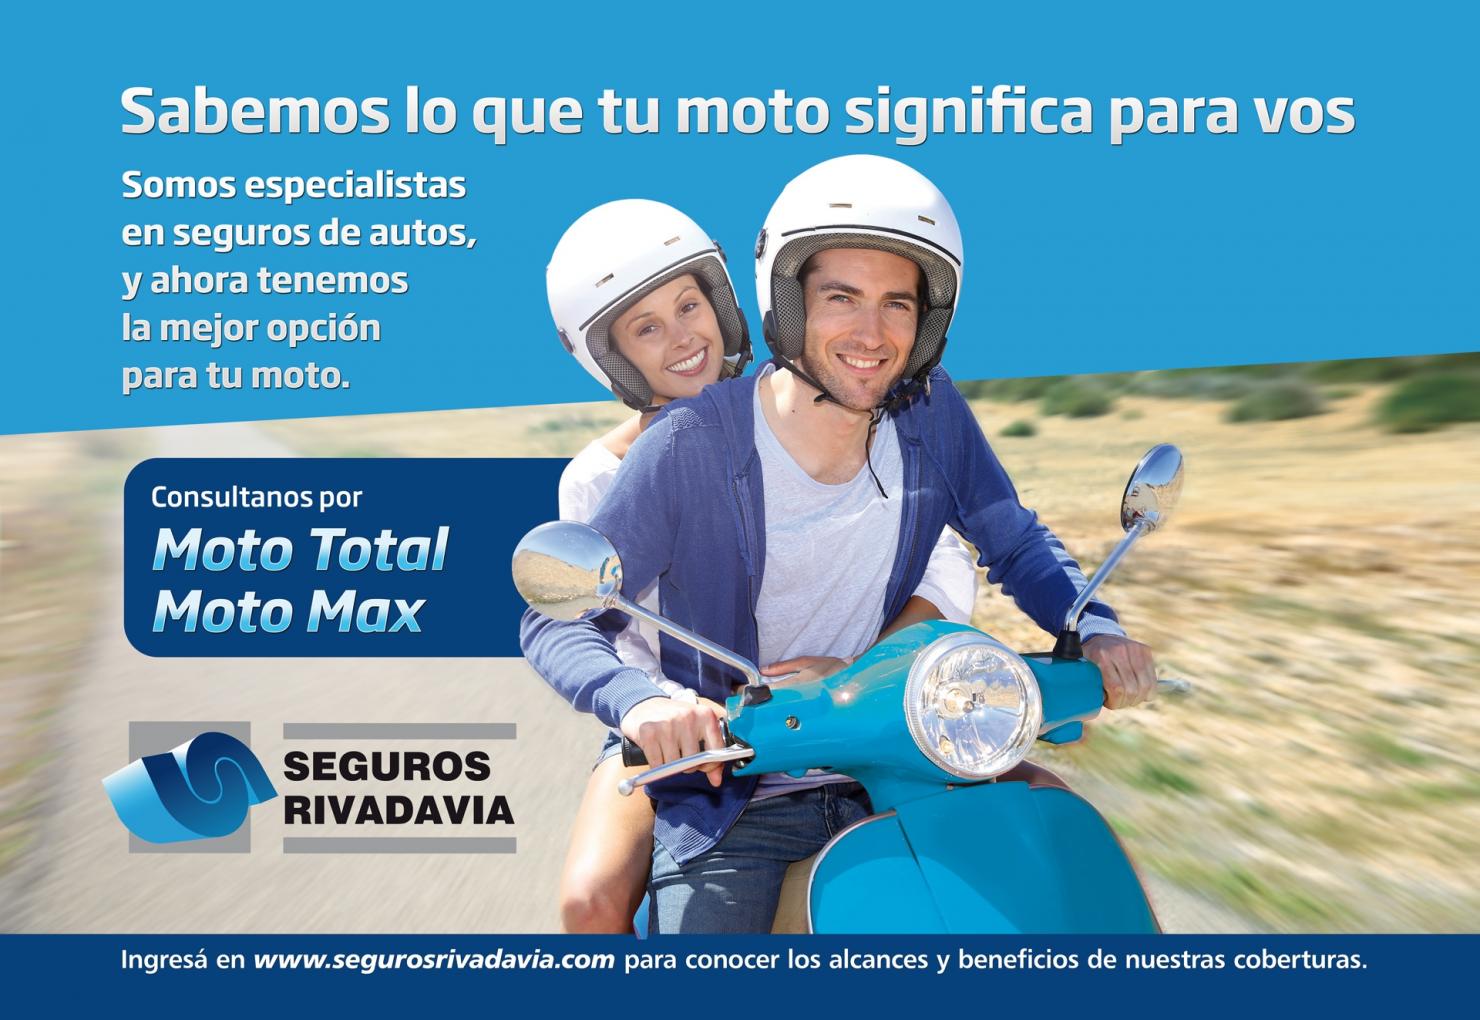  Seguros Rivadavia ampl&iacute;a su l&iacute;nea de productos para motos